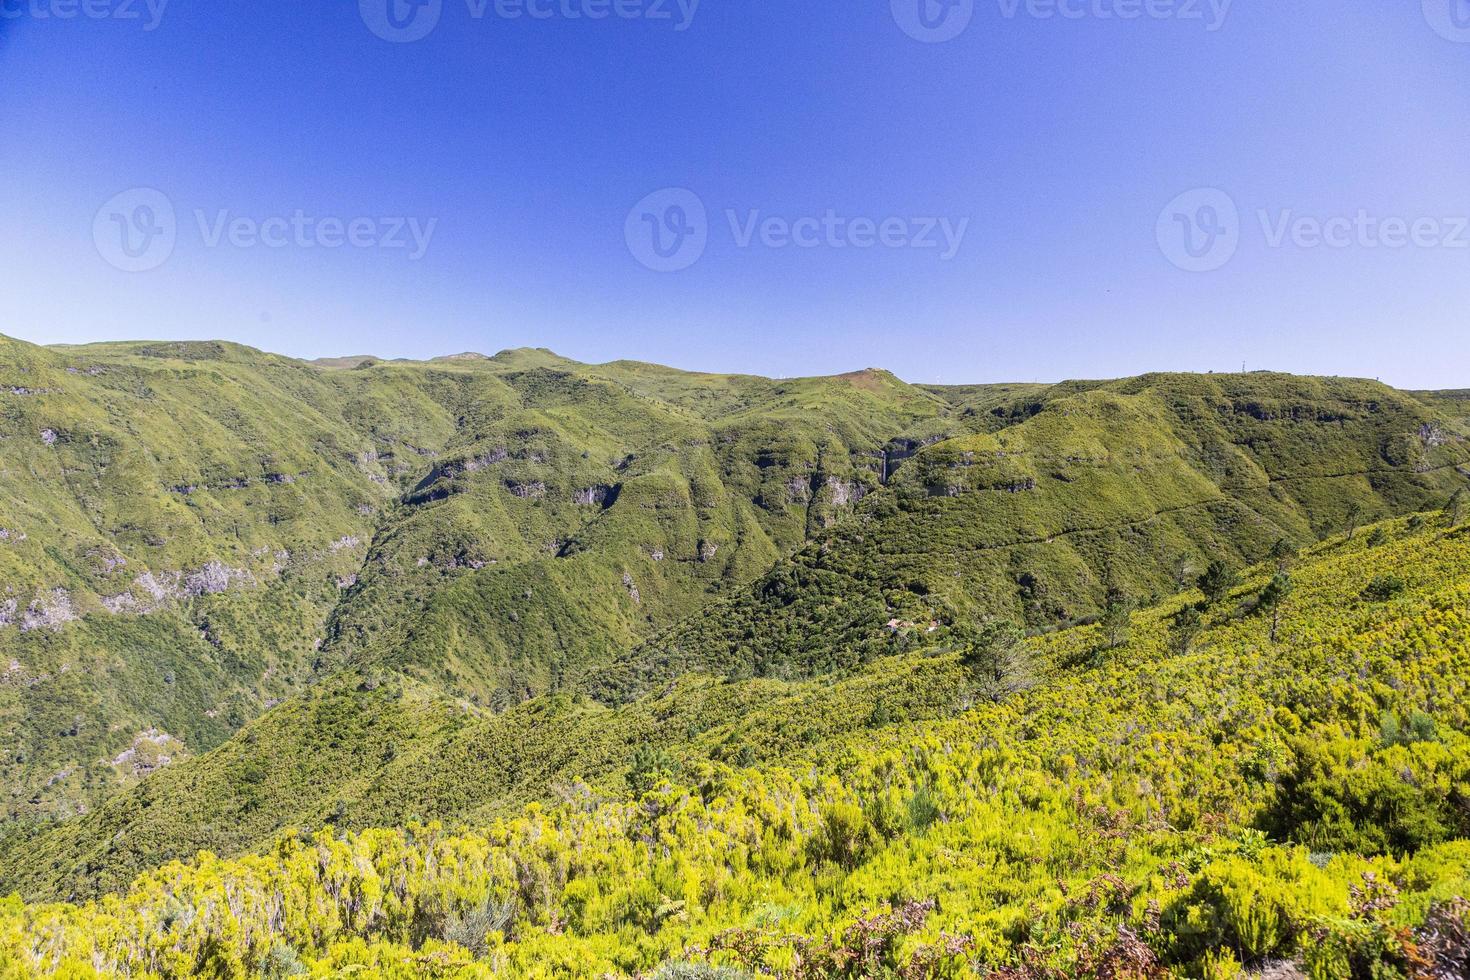 photo panoramique sur l'île portugaise de madère en été